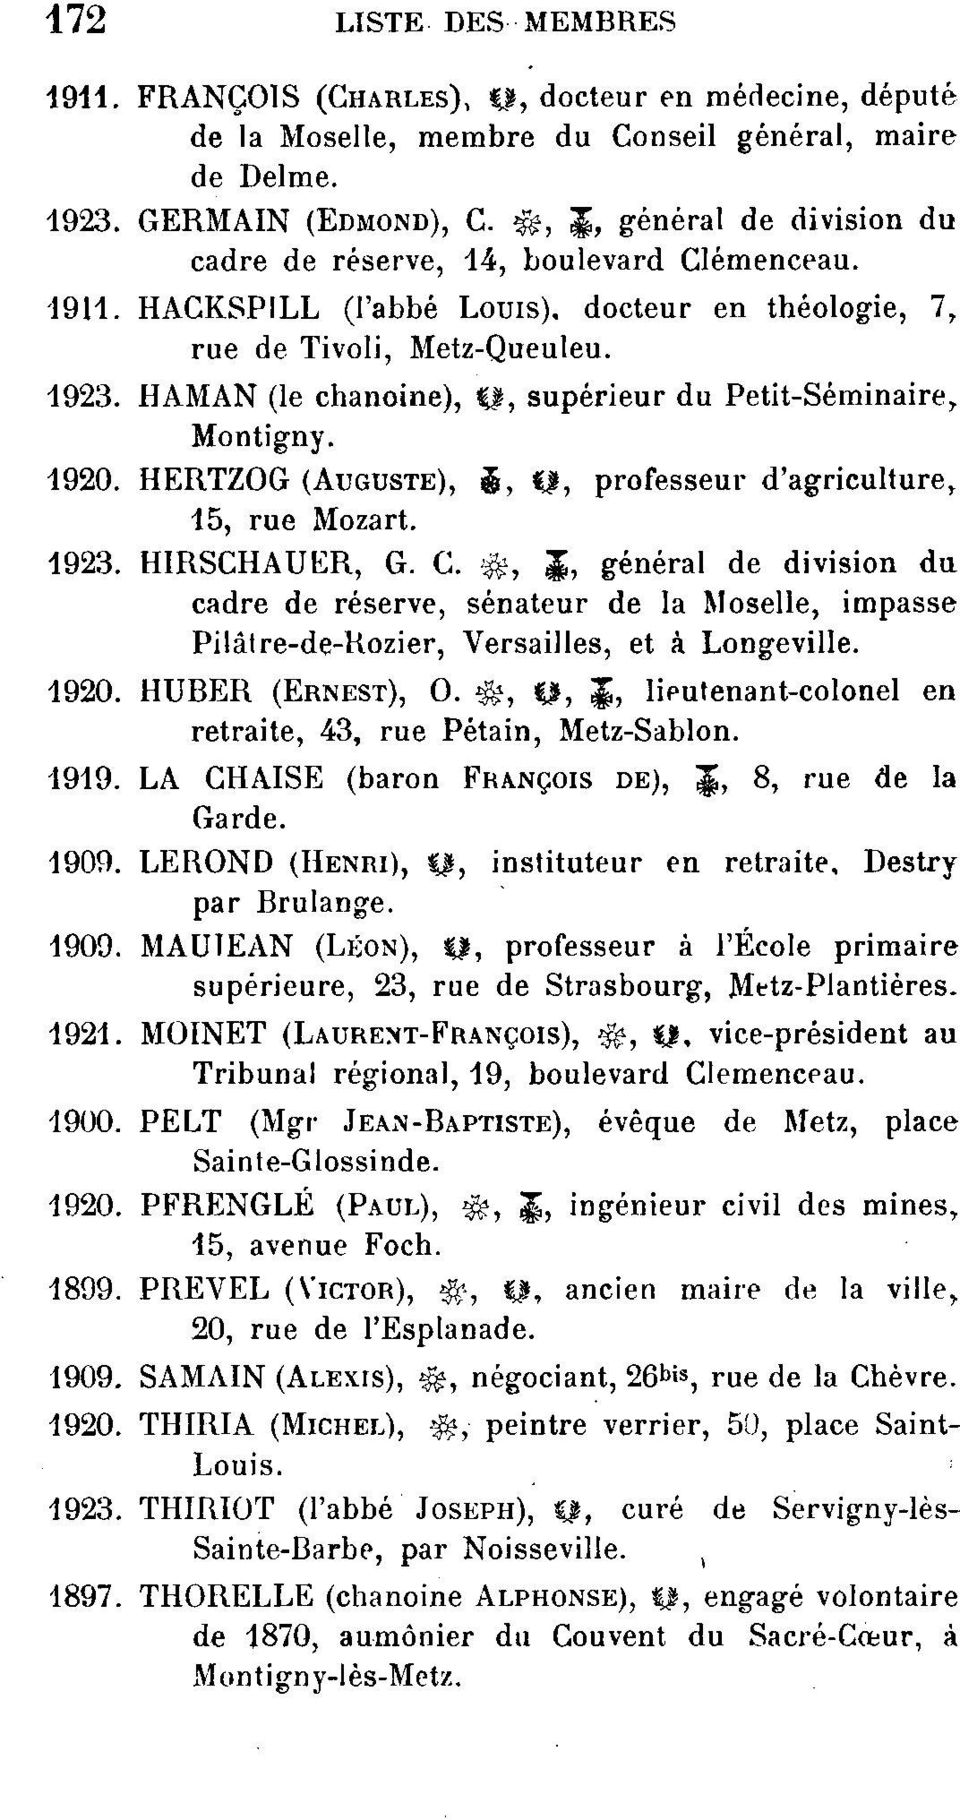 HAMAN (le chanoine), f, supérieur du Petit-Séminaire,. Montigny. 1920. HERTZOG (AUGUSTE), $, %$, professeur d'agriculture, 15, rue Mozart. 1923. HIRSCHAUER, G. C.